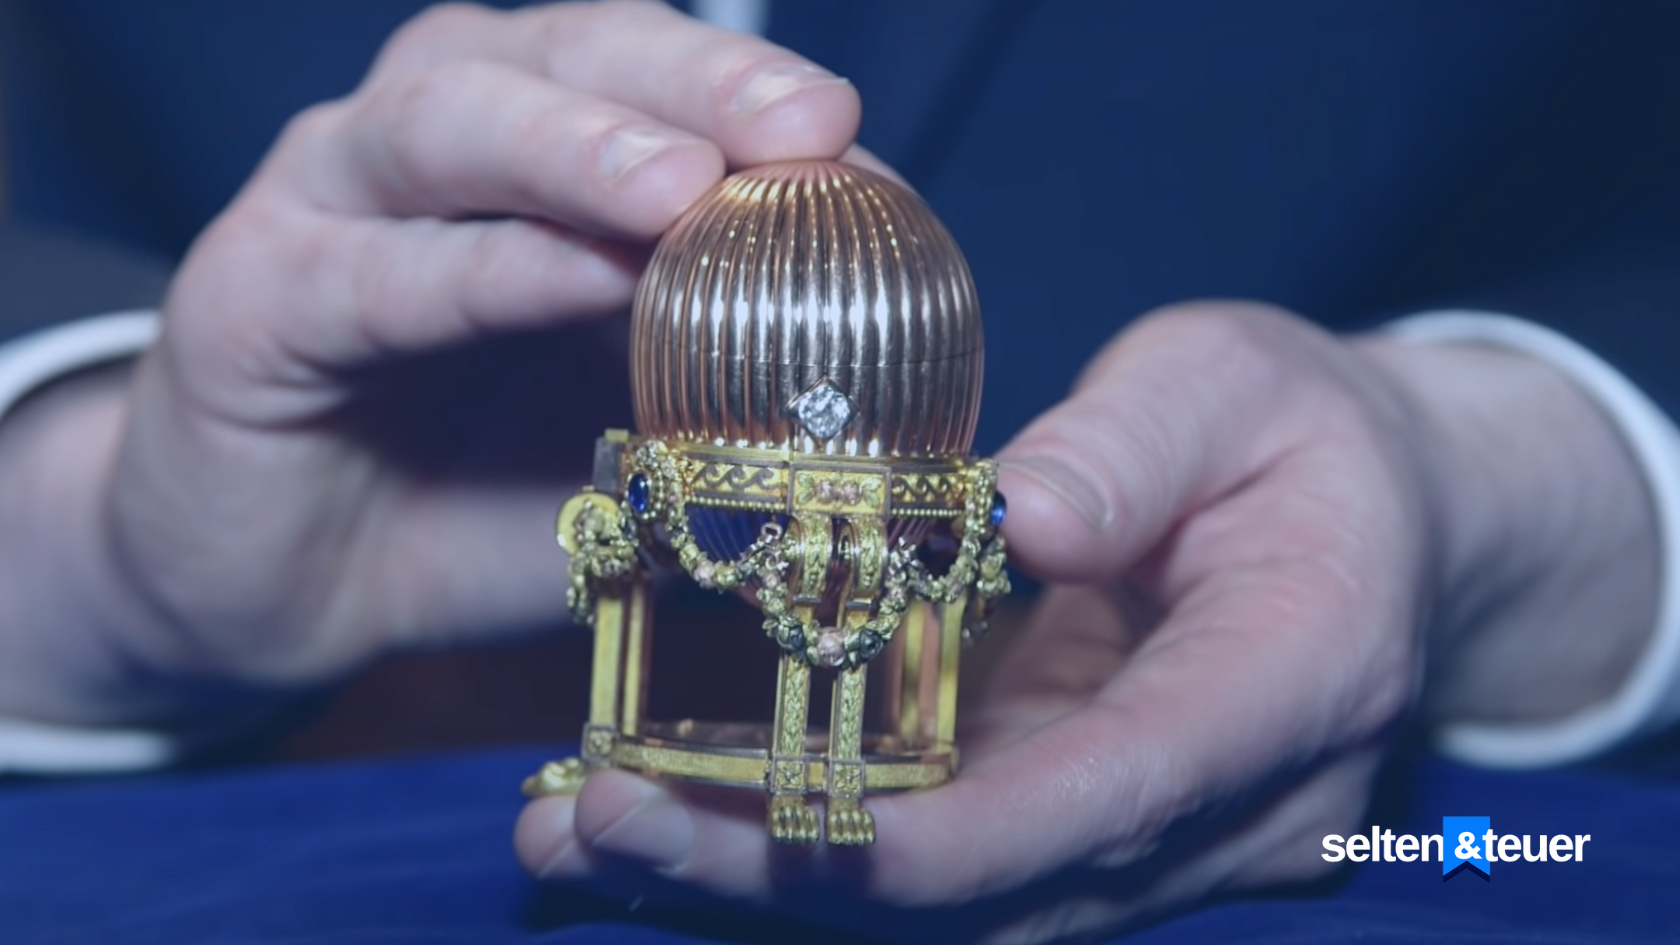 Drittes Kaiserliches Ei - das teuerste Fabergé-Ei der Welt